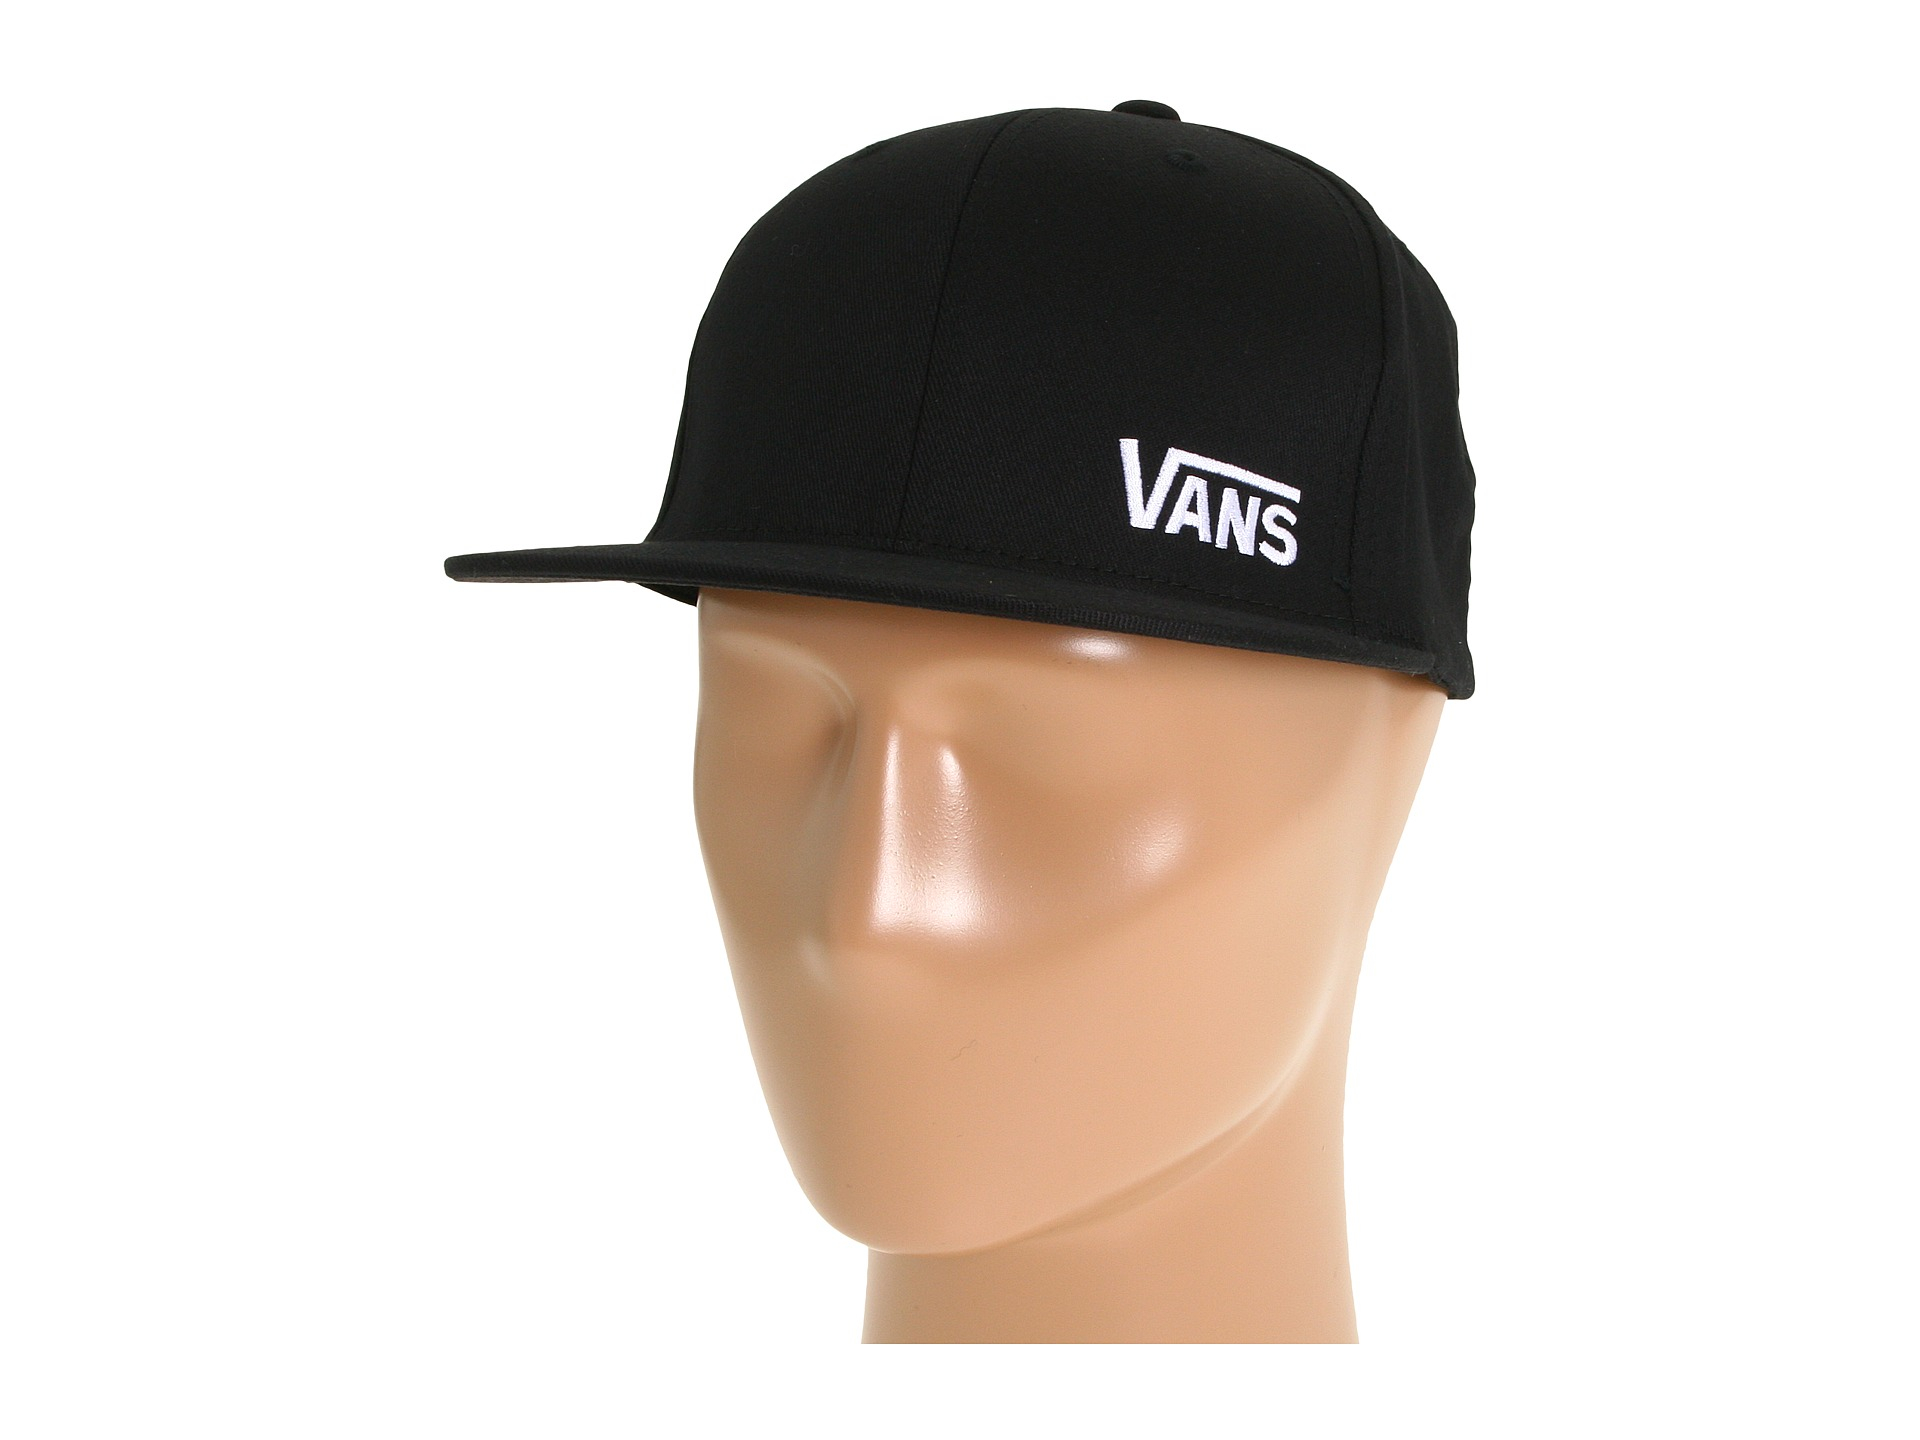 Vans Splitz Flexfit Hat in Black for Men - Lyst